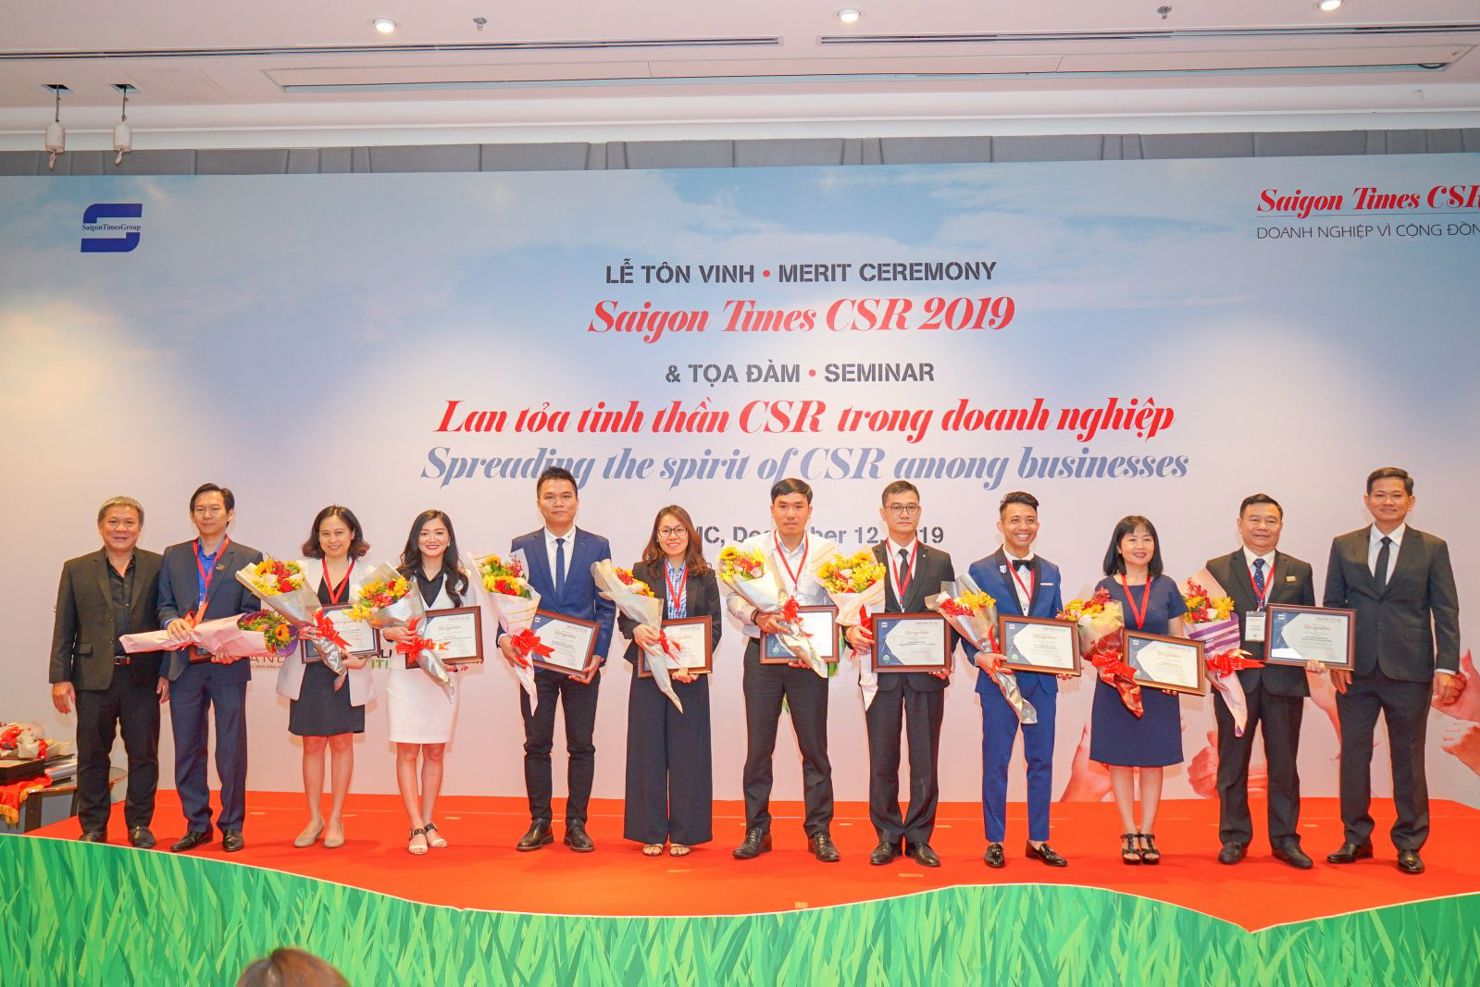 Đại diện Nam Long nhận chứng nhận “Doanh nghiệp Vì Cộng Đồng -  CSR 2019”. Ảnh NLG